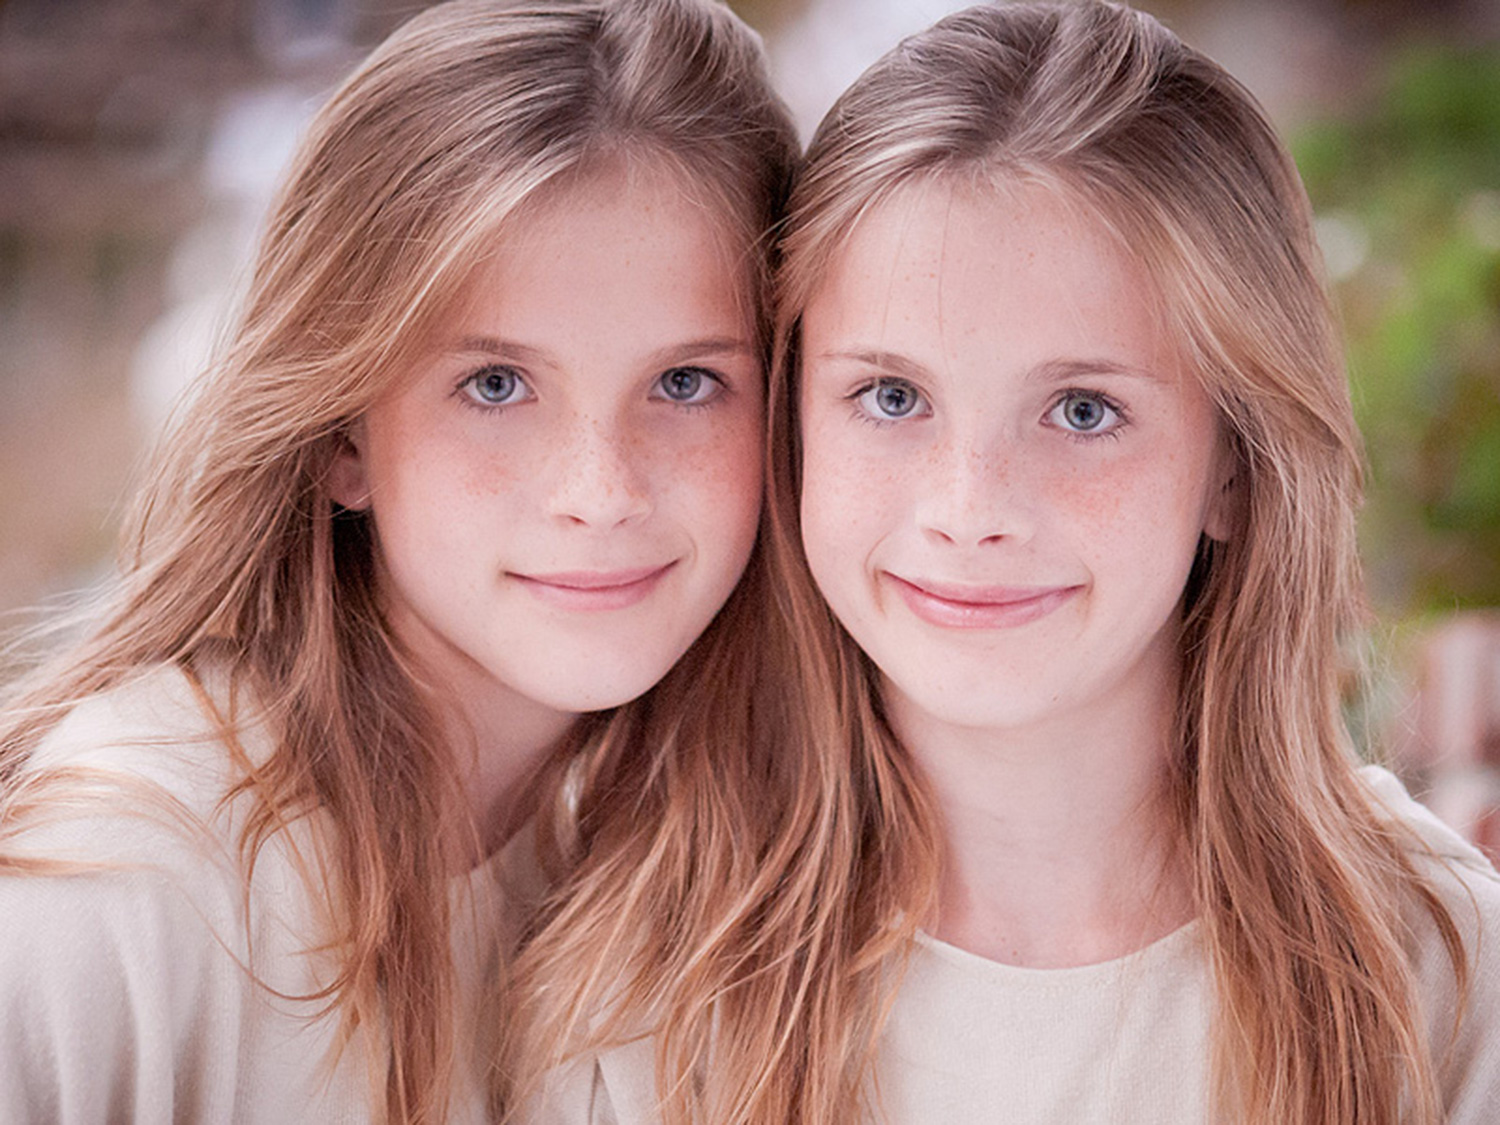 Друзья 12 лет спустя: Как выглядит дочка Росса и Рейчел - Звезды и